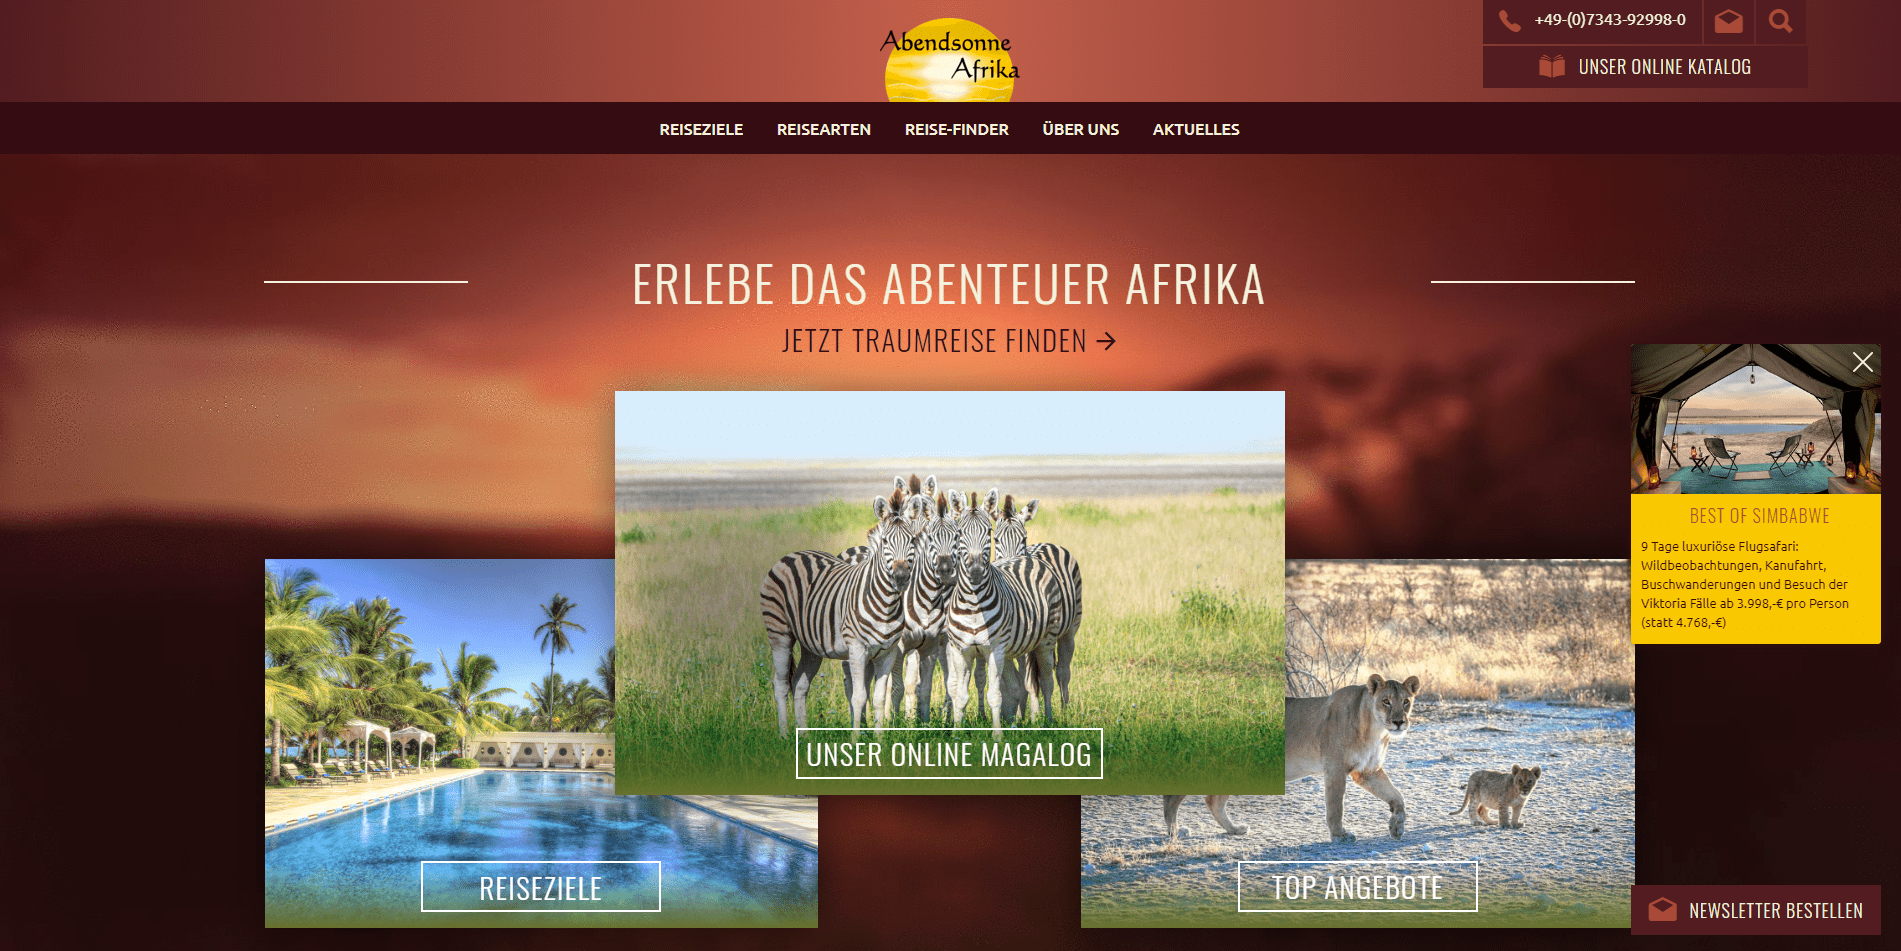 Abendsonne Afrika Home Page